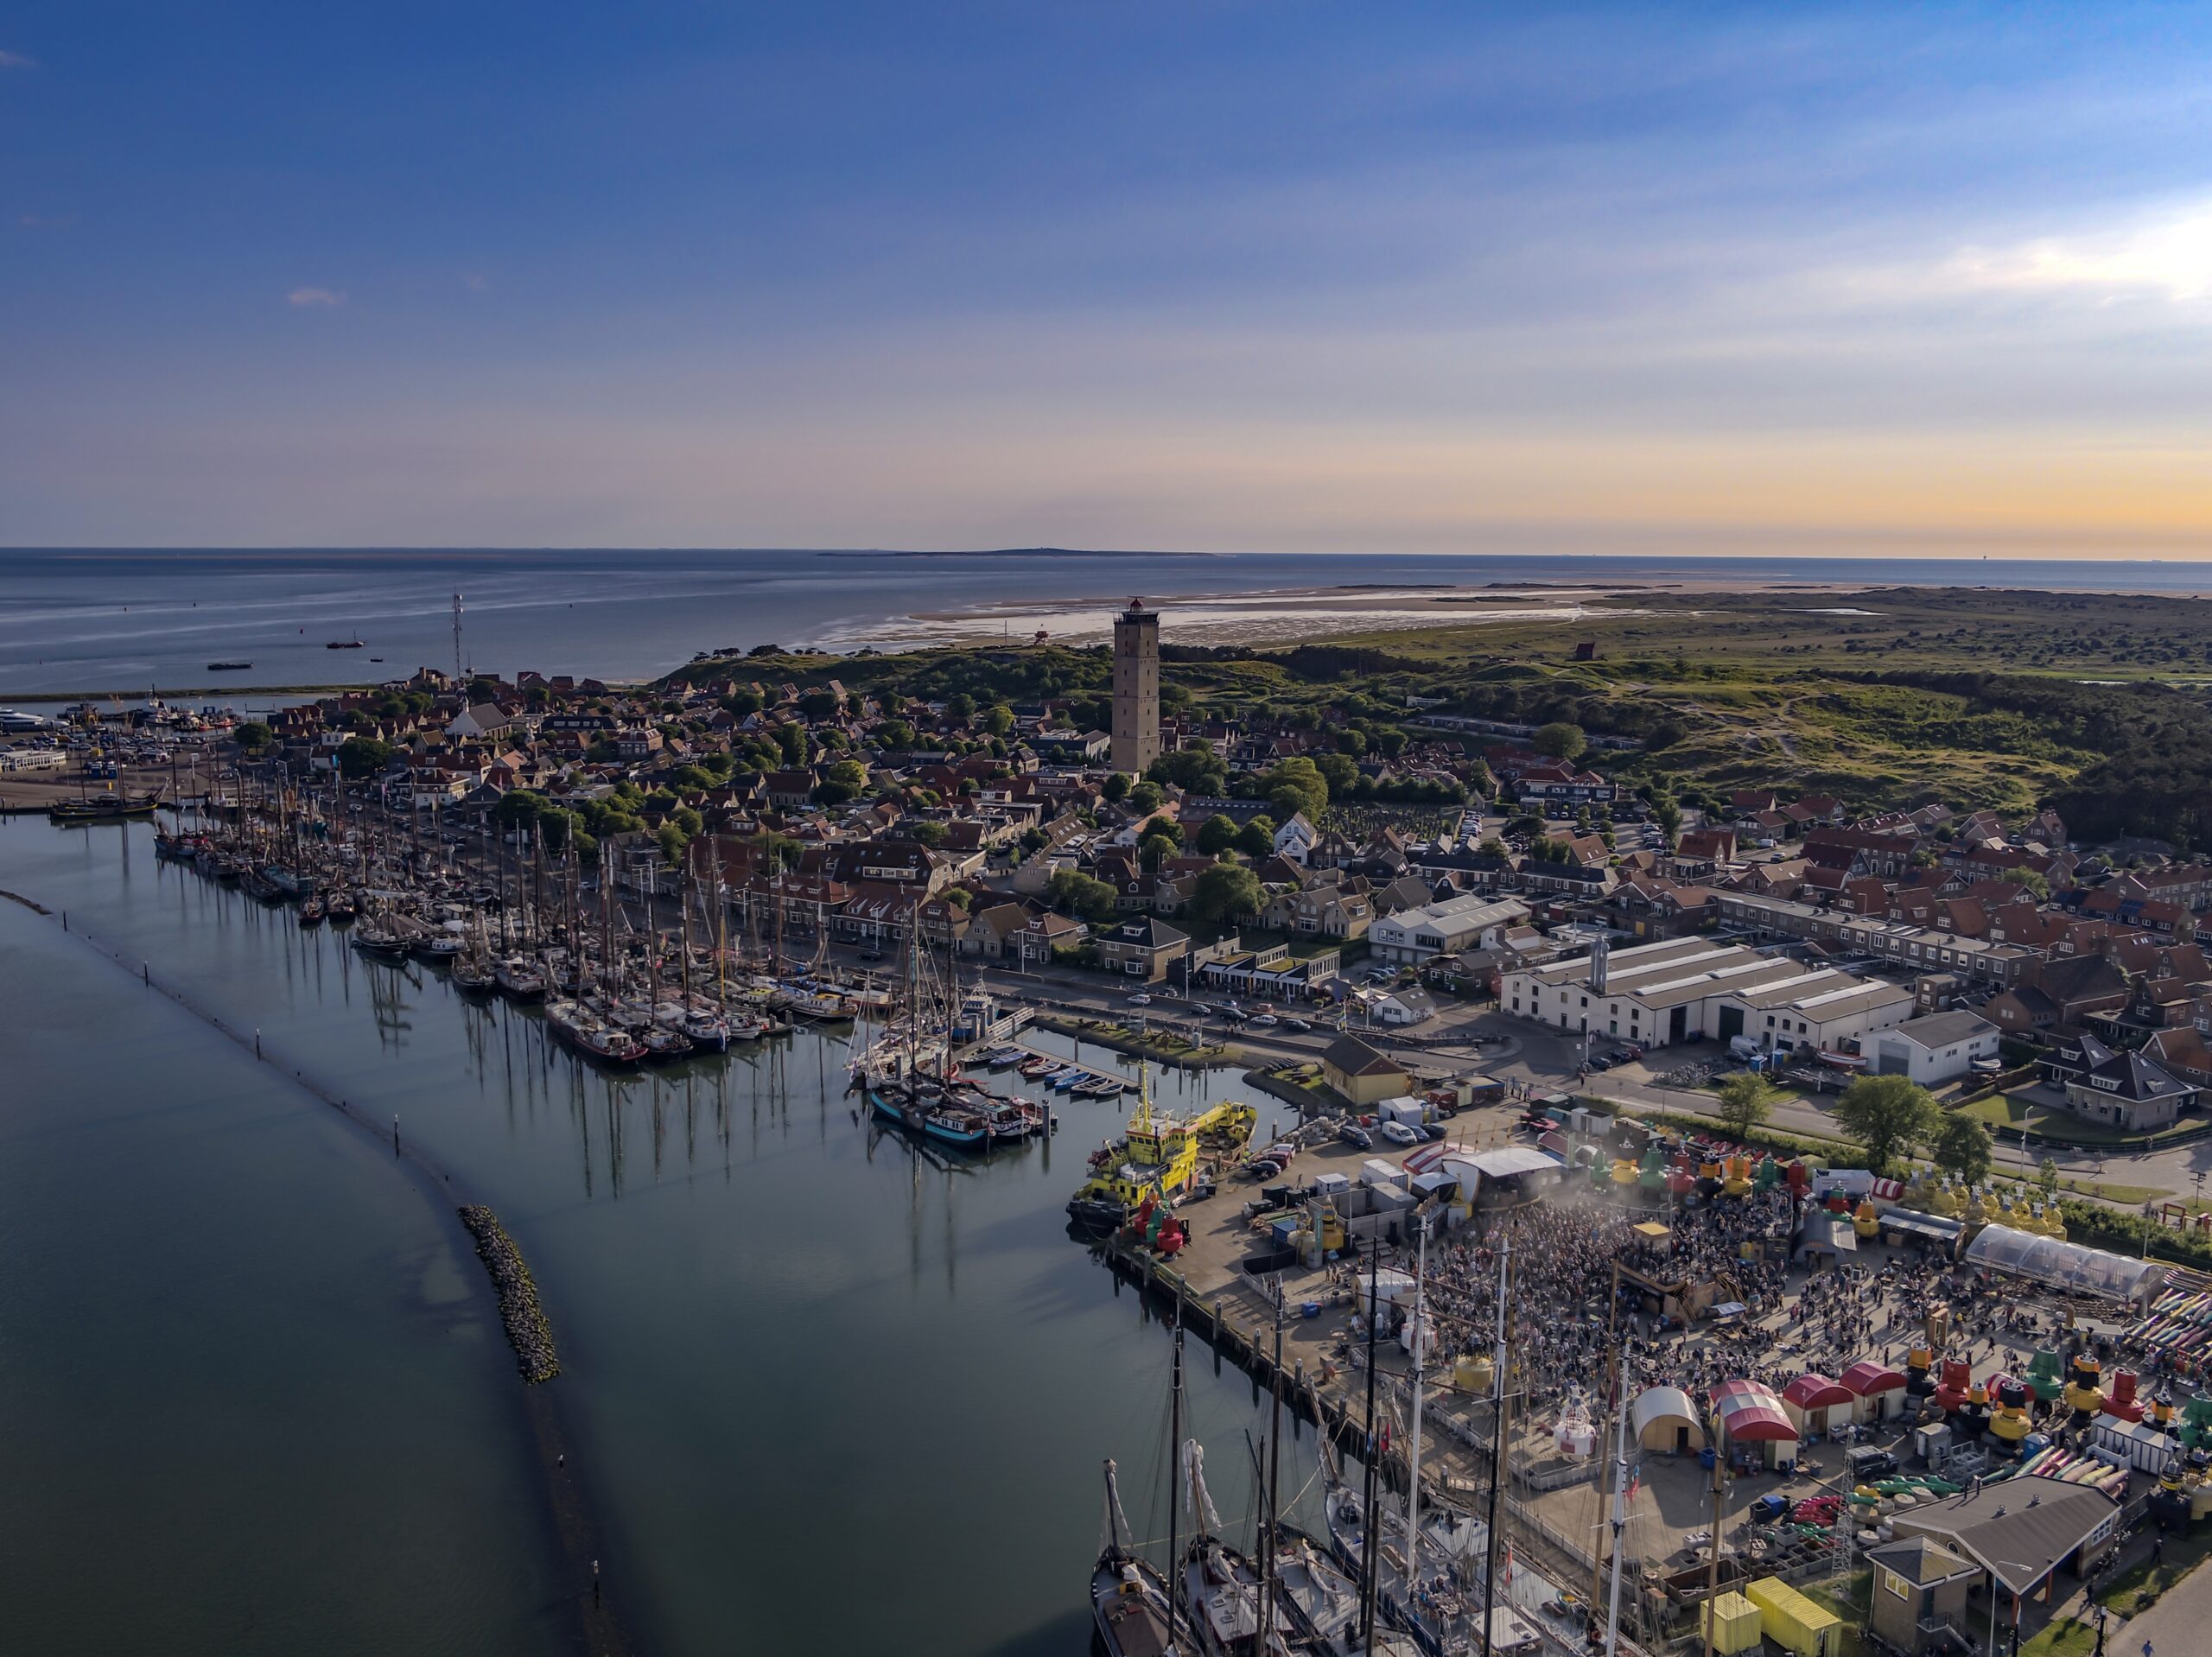 Drone shot van West-Terschelling, waarop je de bruine vloot haven, het dorp, vuurtoren de Brandaris en een met mensen gevuld festivalterrein de Betonning ziet.